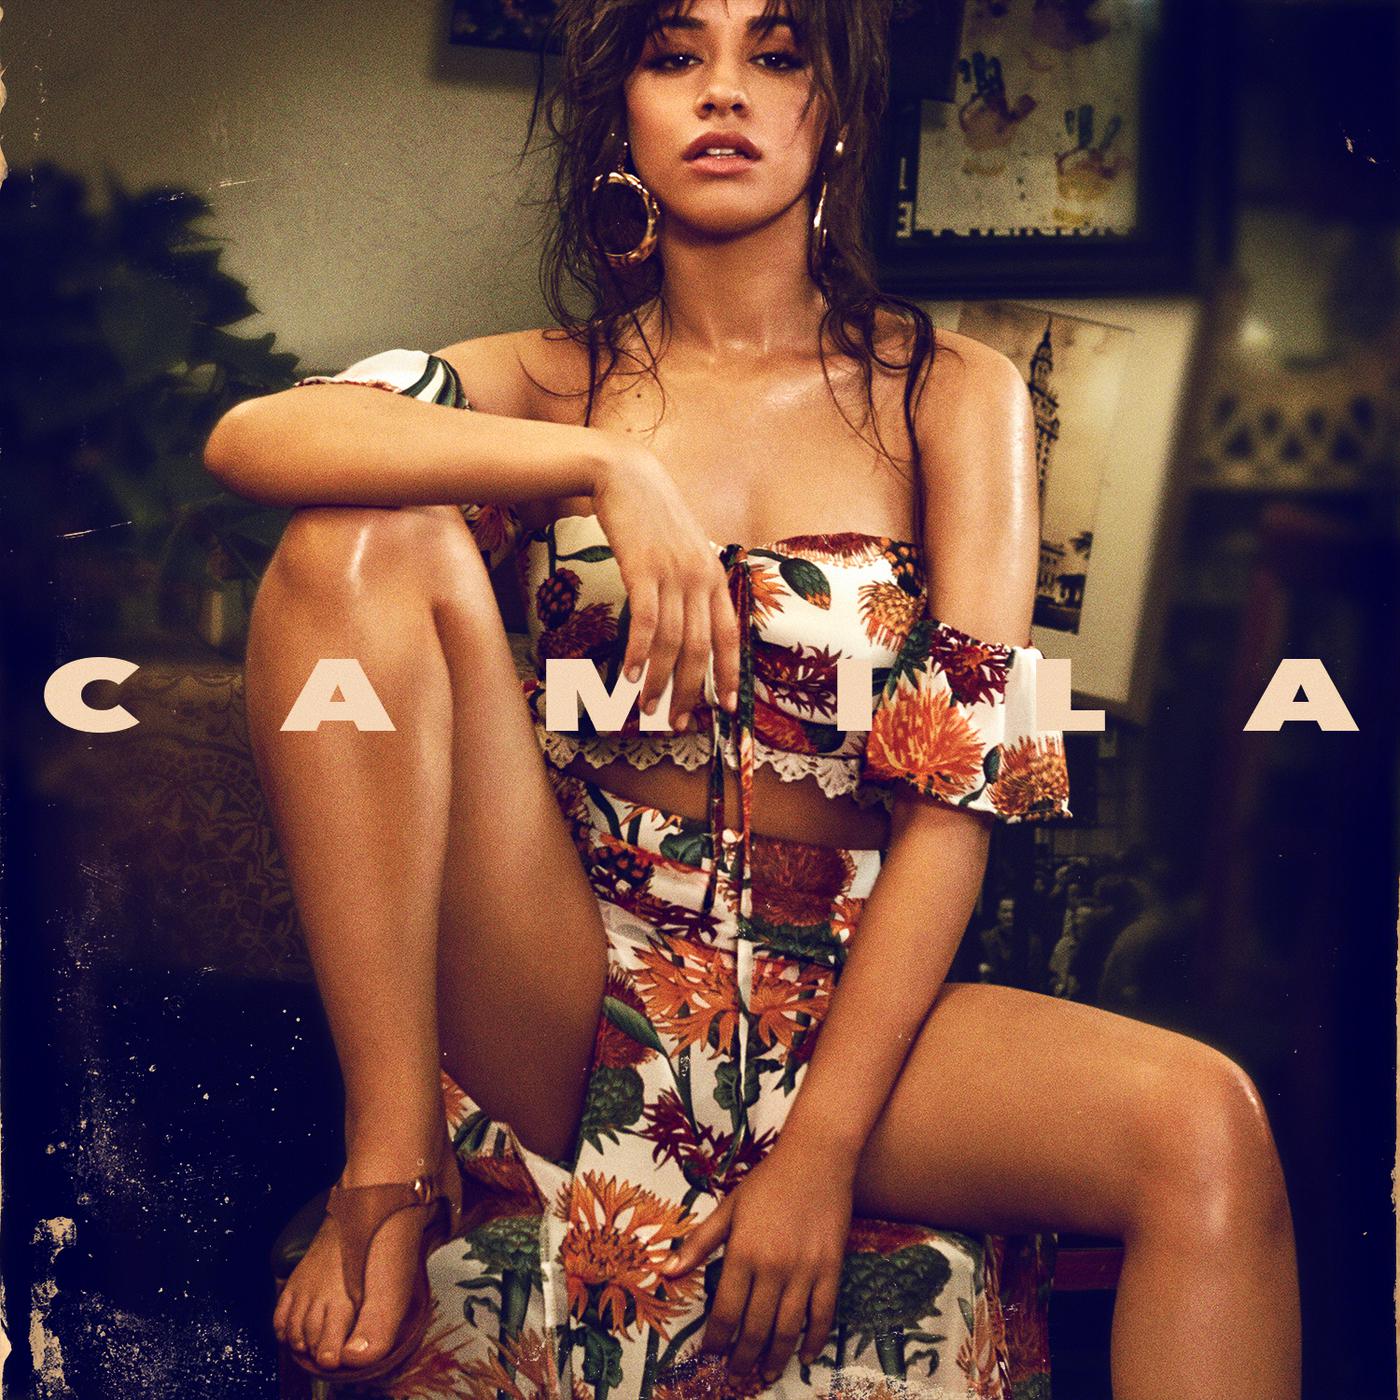 Consequences歌词 歌手Camila Cabello-专辑Camila-单曲《Consequences》LRC歌词下载